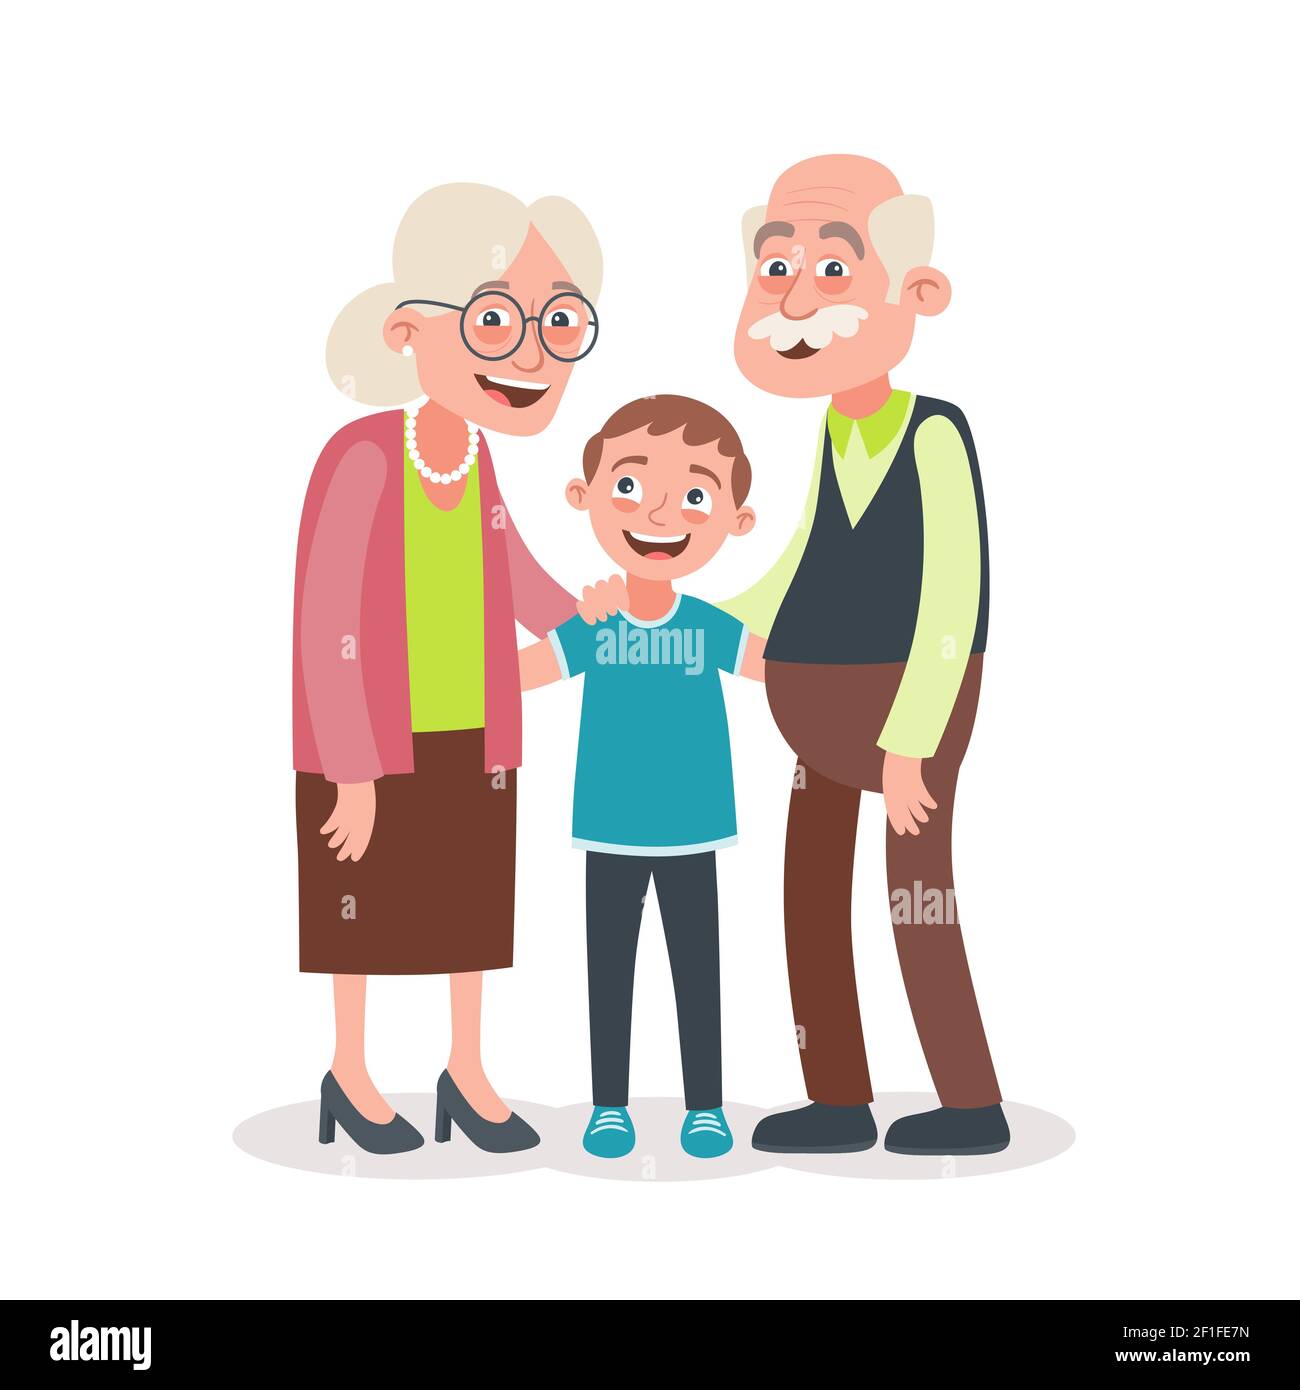 Großeltern und Enkel Porträt. Großeltern Tageskonzept. Vektorgrafik im Cartoon-Stil, isoliert auf weißem Hintergrund. Stock Vektor